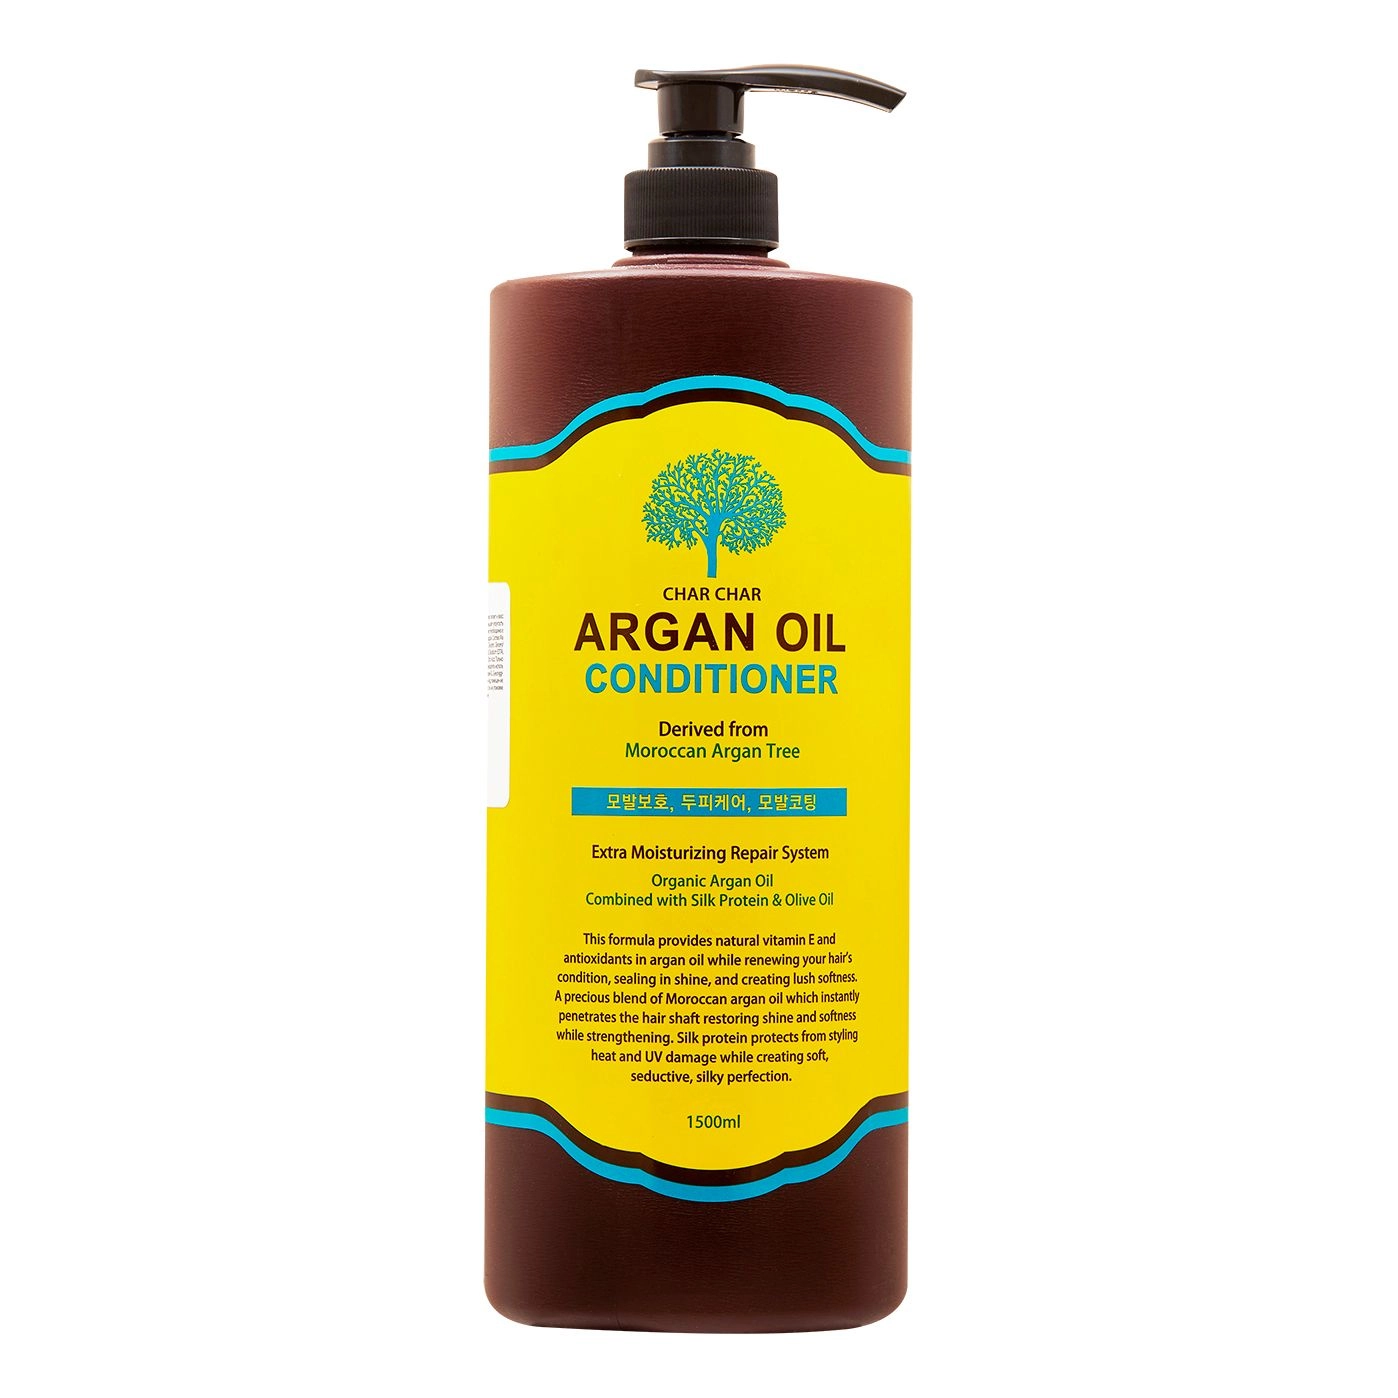 Кондиционер для волос с аргановым маслом - Char Char Argan Oil Conditioner, 1500 мл - фото N1